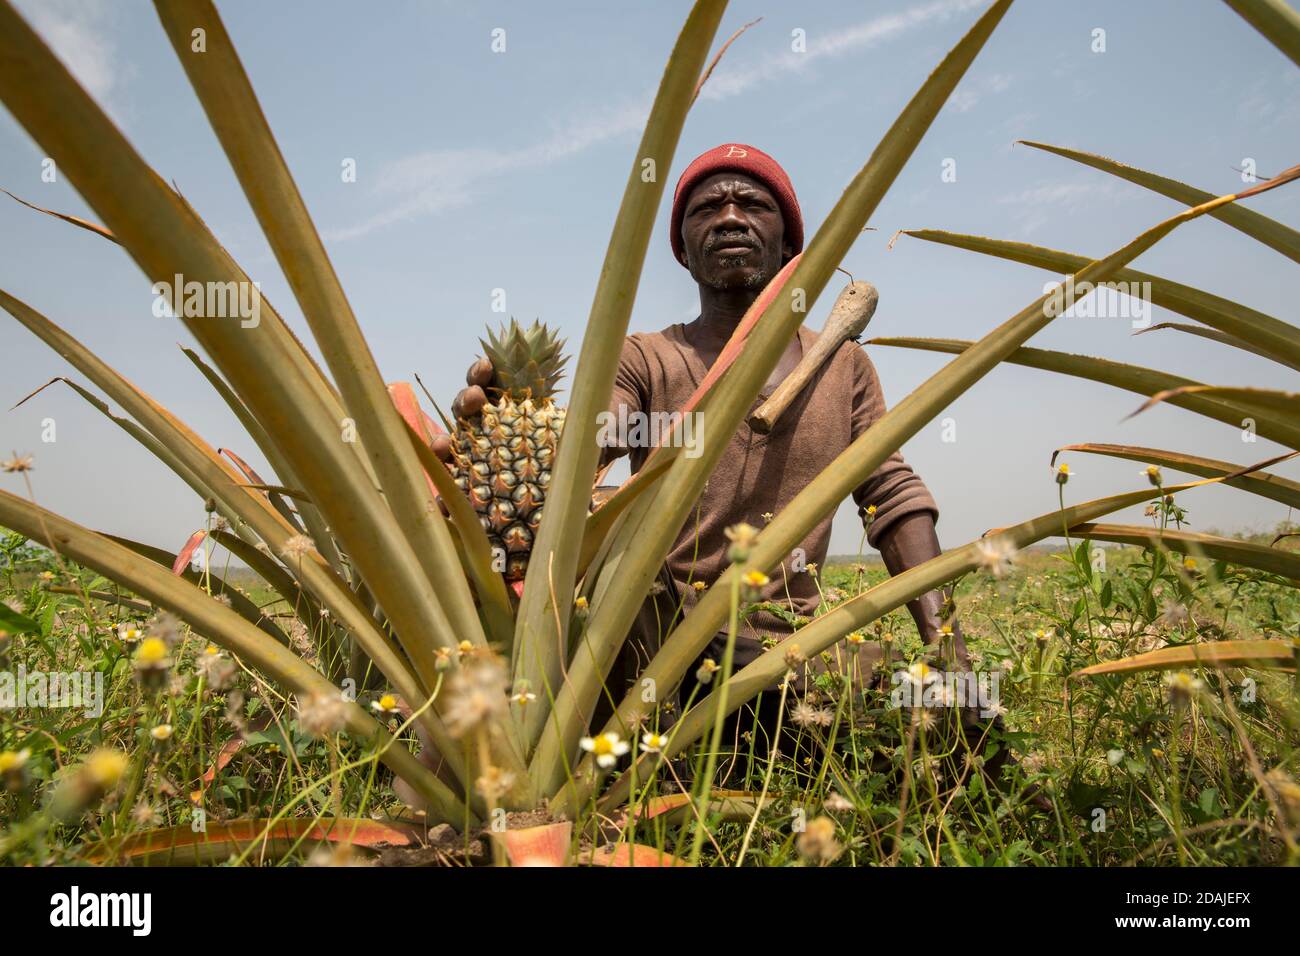 Selingue, Mali, 26 avril 2015 ; Kenekoubo Dolo, 50, fait pousser de l'ananas depuis 5 ans. C'est une bonne affaire – il cultive actuellement 50 fruits par saison, avec deux saisons par an. Il vend ensuite chaque fruit pour 750 à 1,000 CFA. Il y a quelques contraintes – planter plus de plantes que vous sacrifiez le fruit. Il existe également deux variétés de fruits, l'une de qualité inférieure à l'autre. Il cultive également de la papaye qui est une bonne récolte aussi bien qu'il ait besoin d'insecticide qui est cher. Il souhaiterait recevoir les conseils des travailleurs de la vulgarisation mais ne les a jamais reçus ou vus dans la région. Banque D'Images